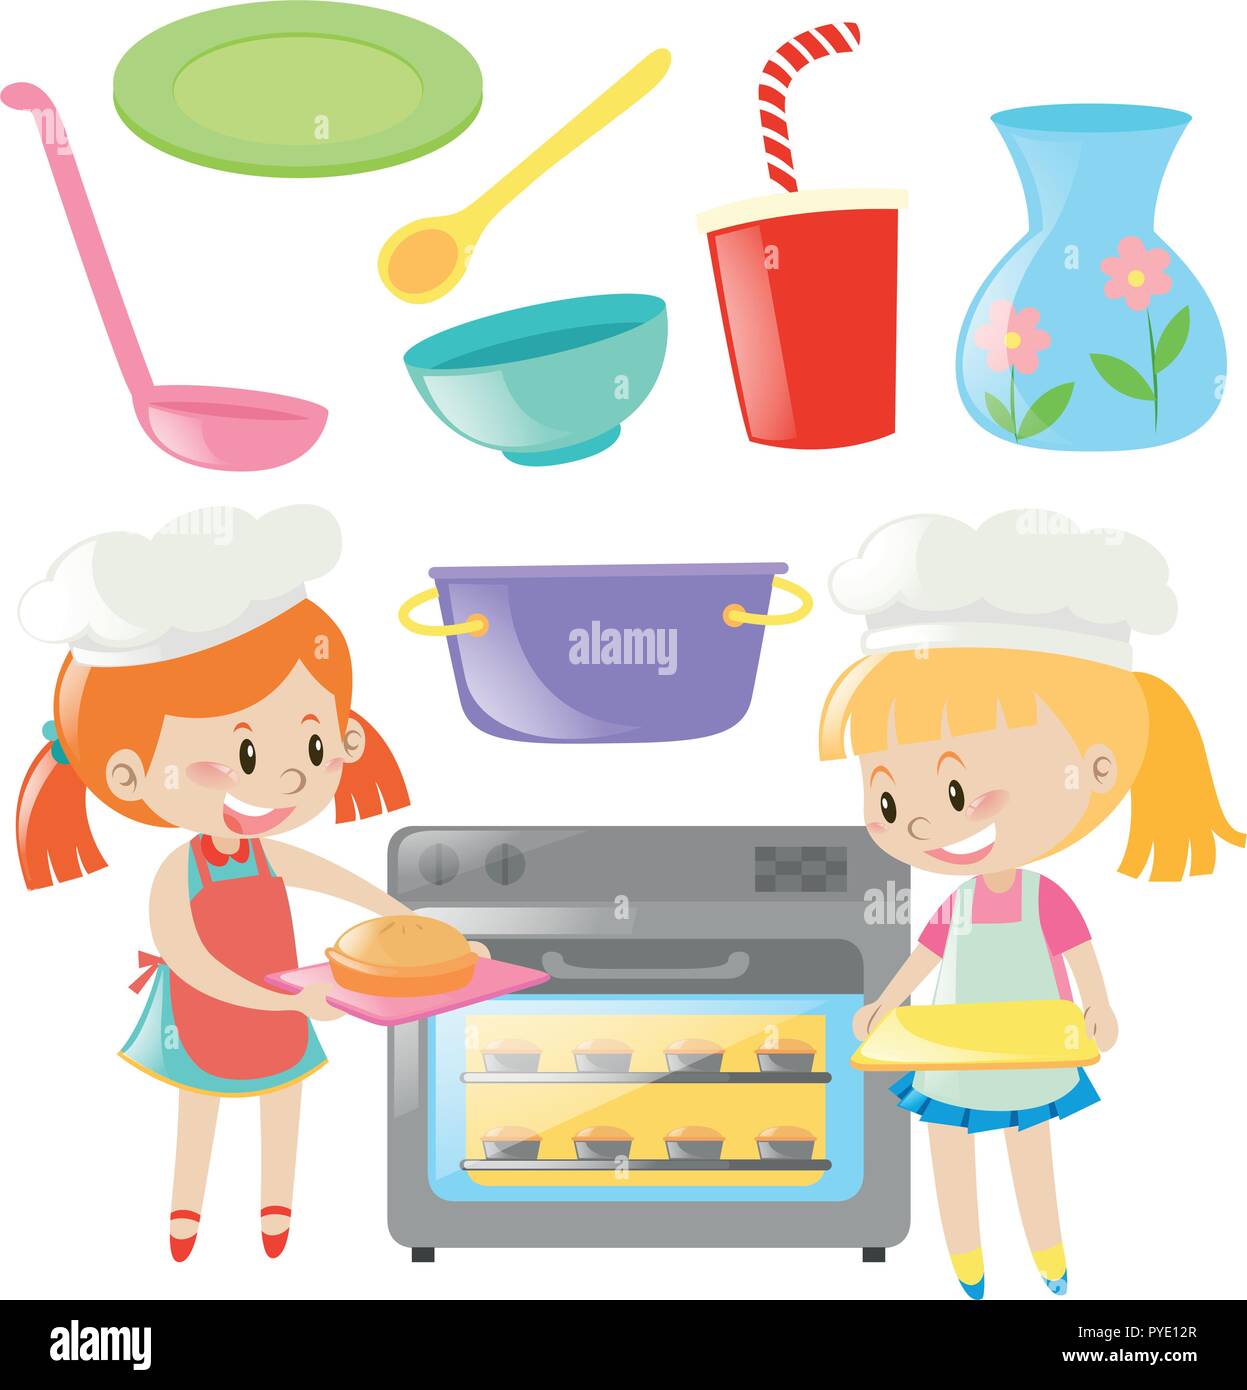 Girls baking and kitchen utensils set illustration Stock Vector